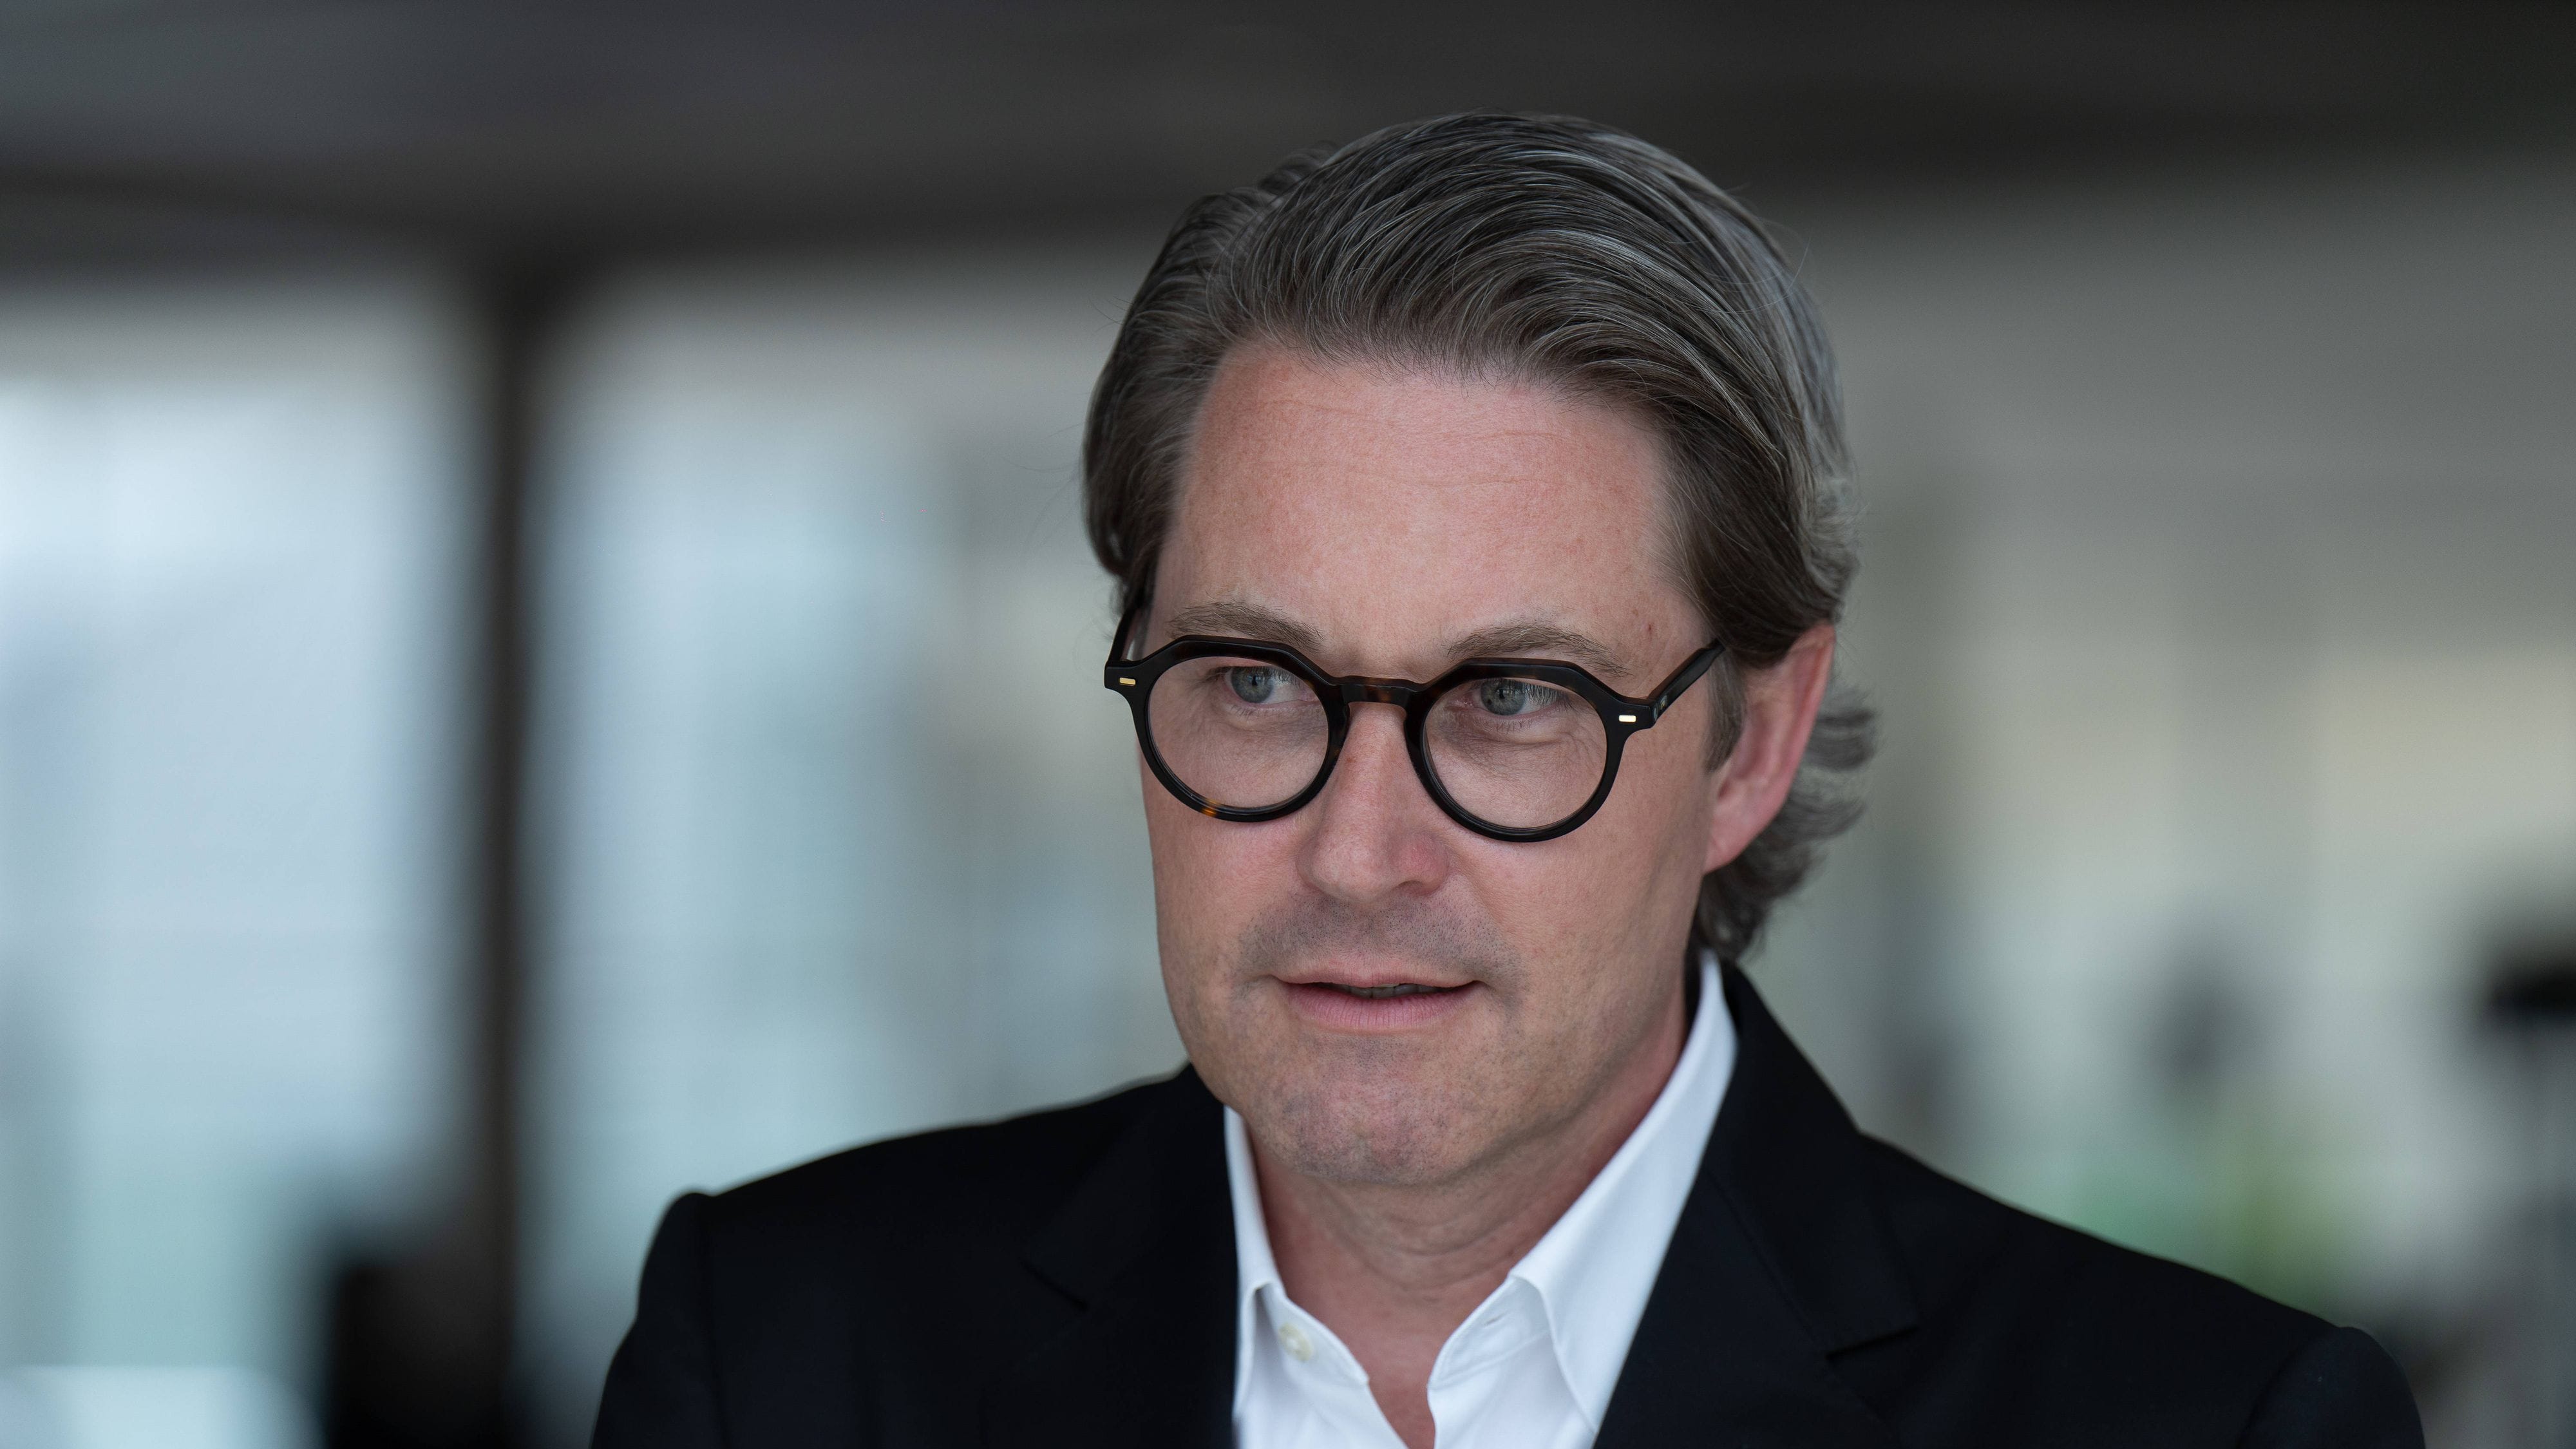 Andreas Scheuer (CSU) legt Bundestagsmandat nieder